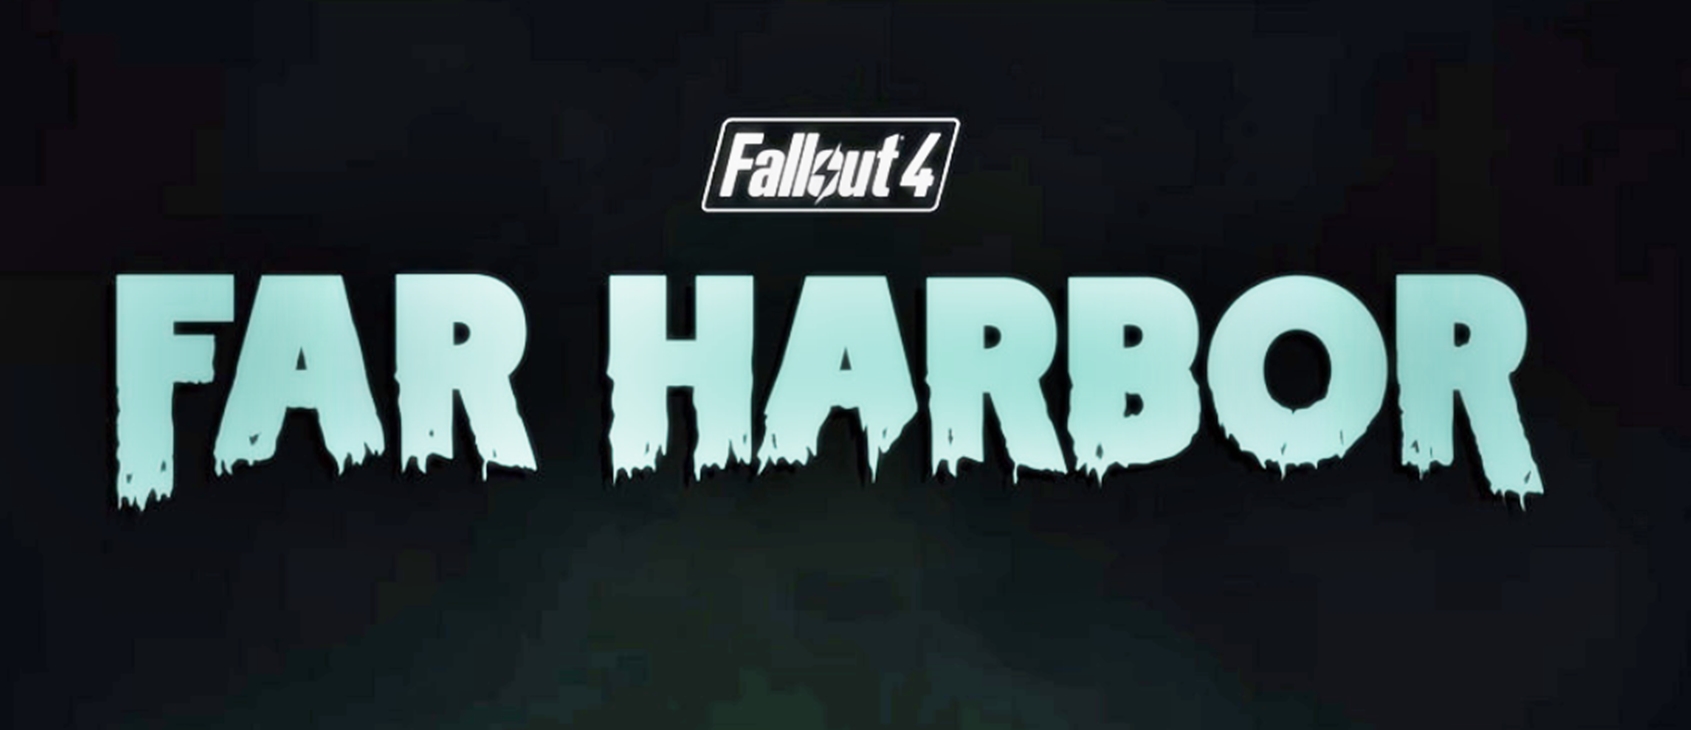 fallout 4 far harbor free